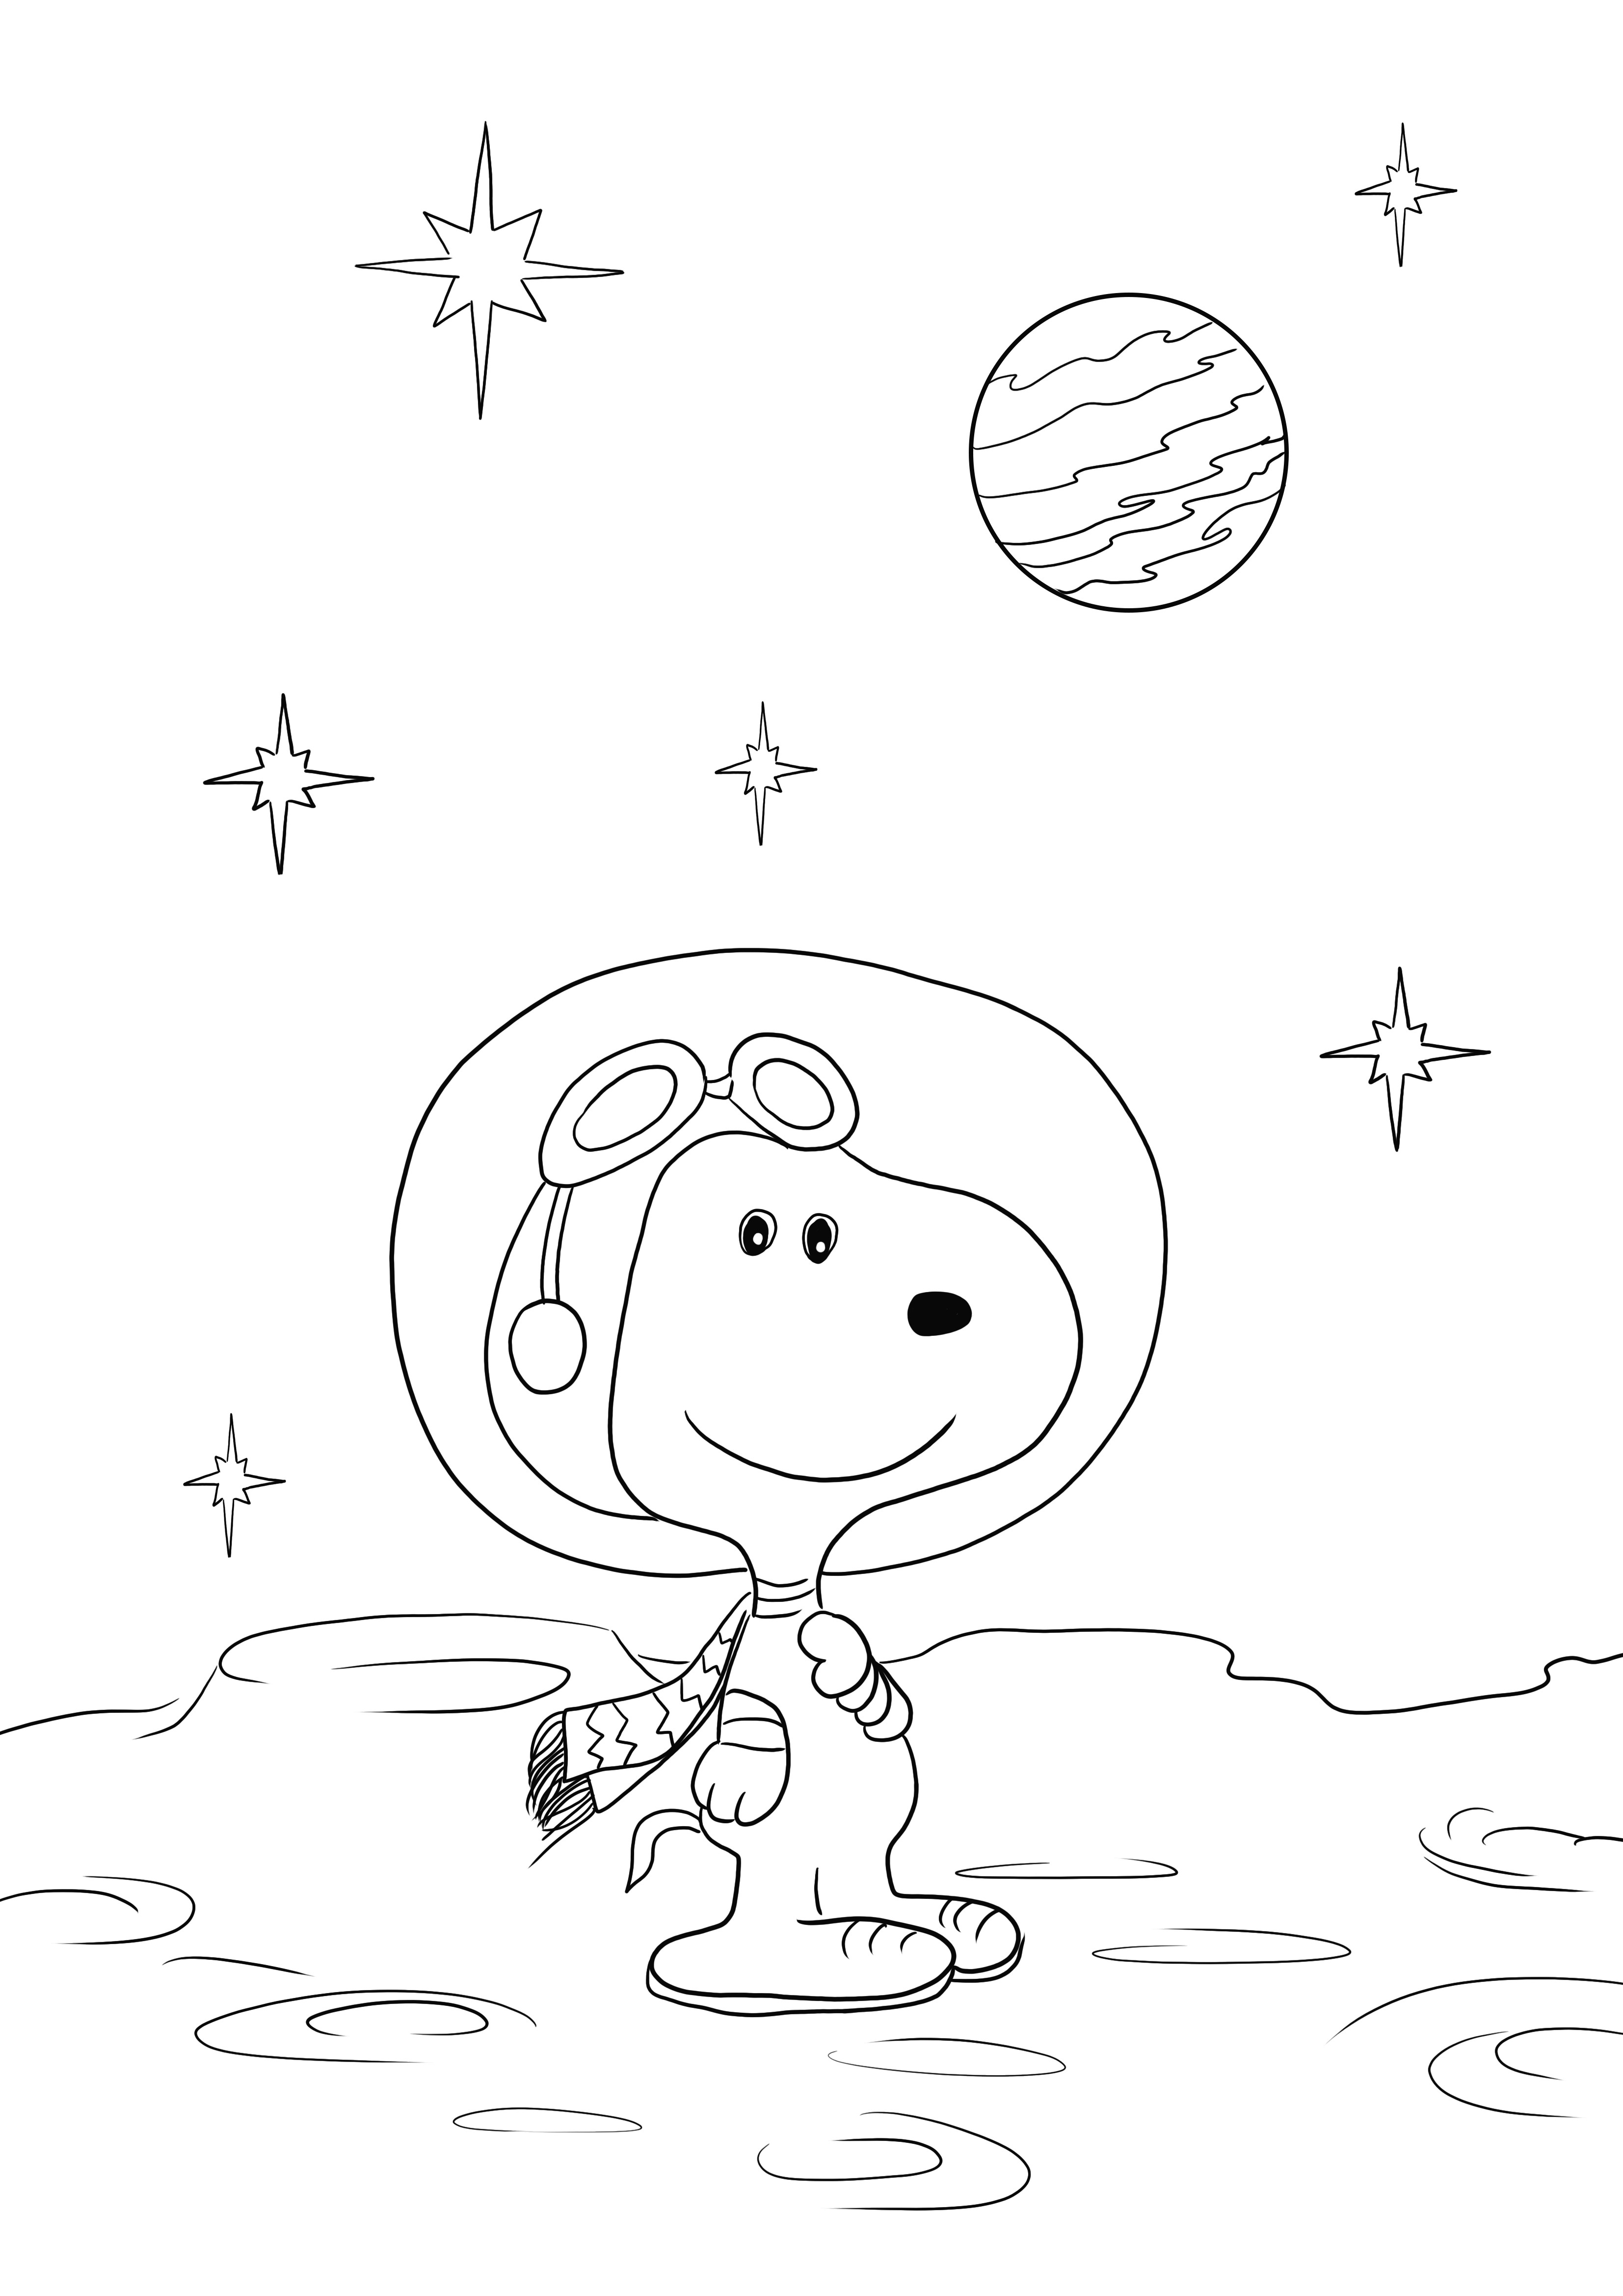 İşte indirmek veya yazdırmak ve renklendirmek için ücretsiz Uzaydaki Snoopy sayfamız